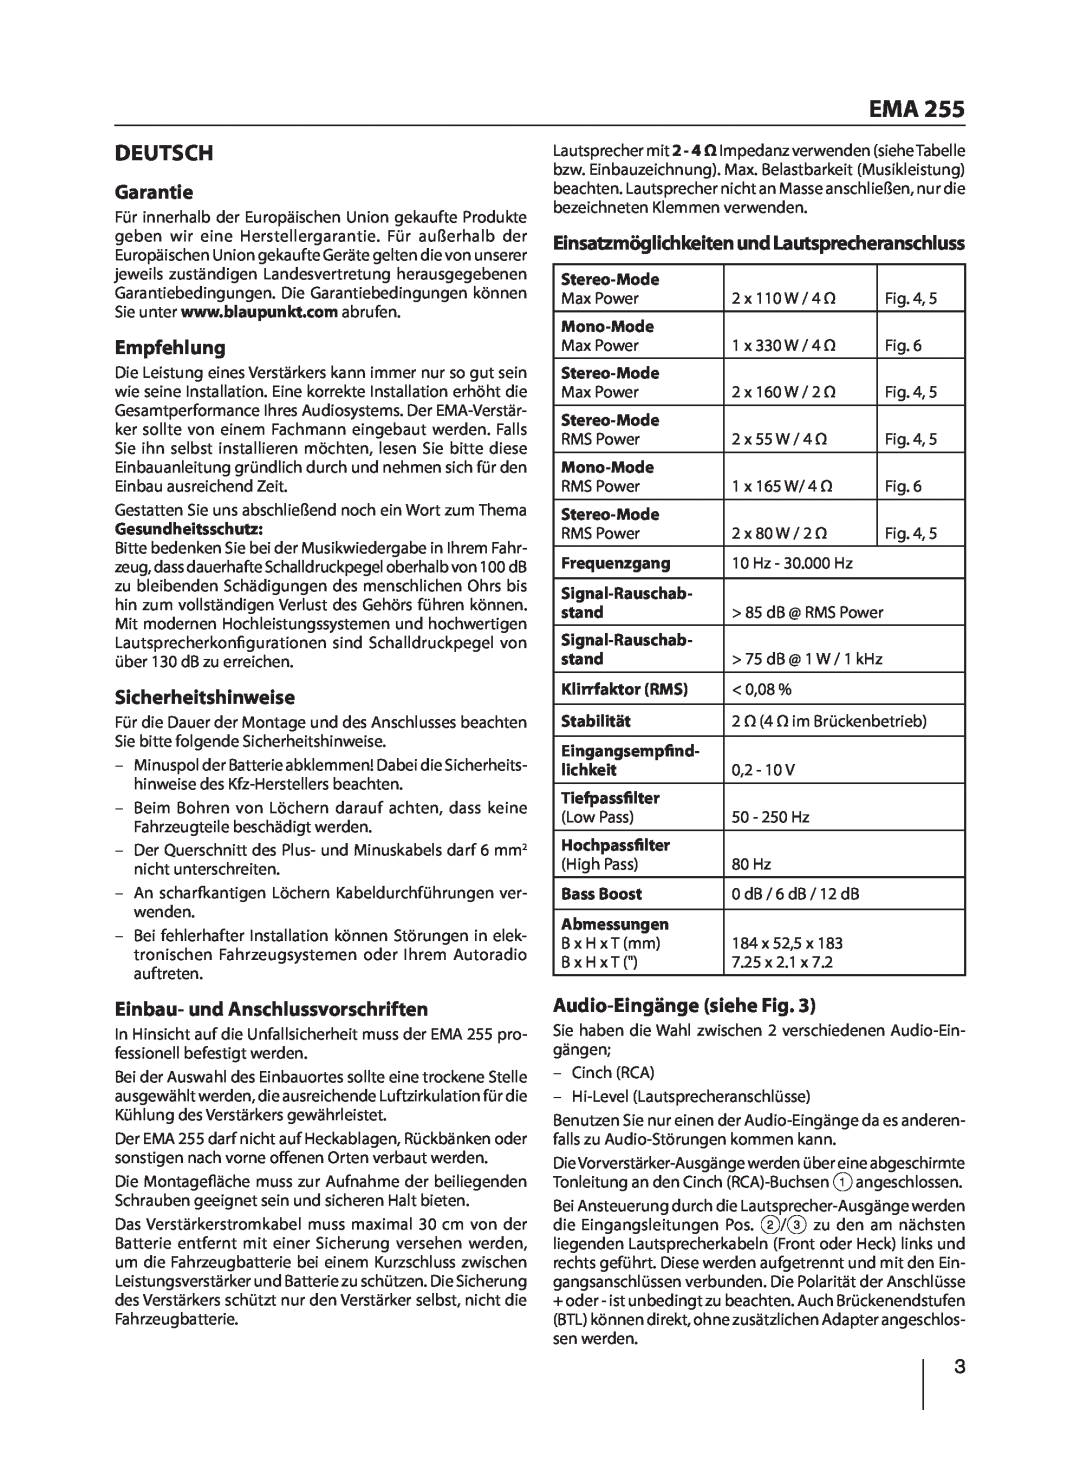 Blaupunkt EMA 255 manual Deutsch, Garantie, Empfehlung, Sicherheitshinweise, Einbau- und Anschlussvorschriften 